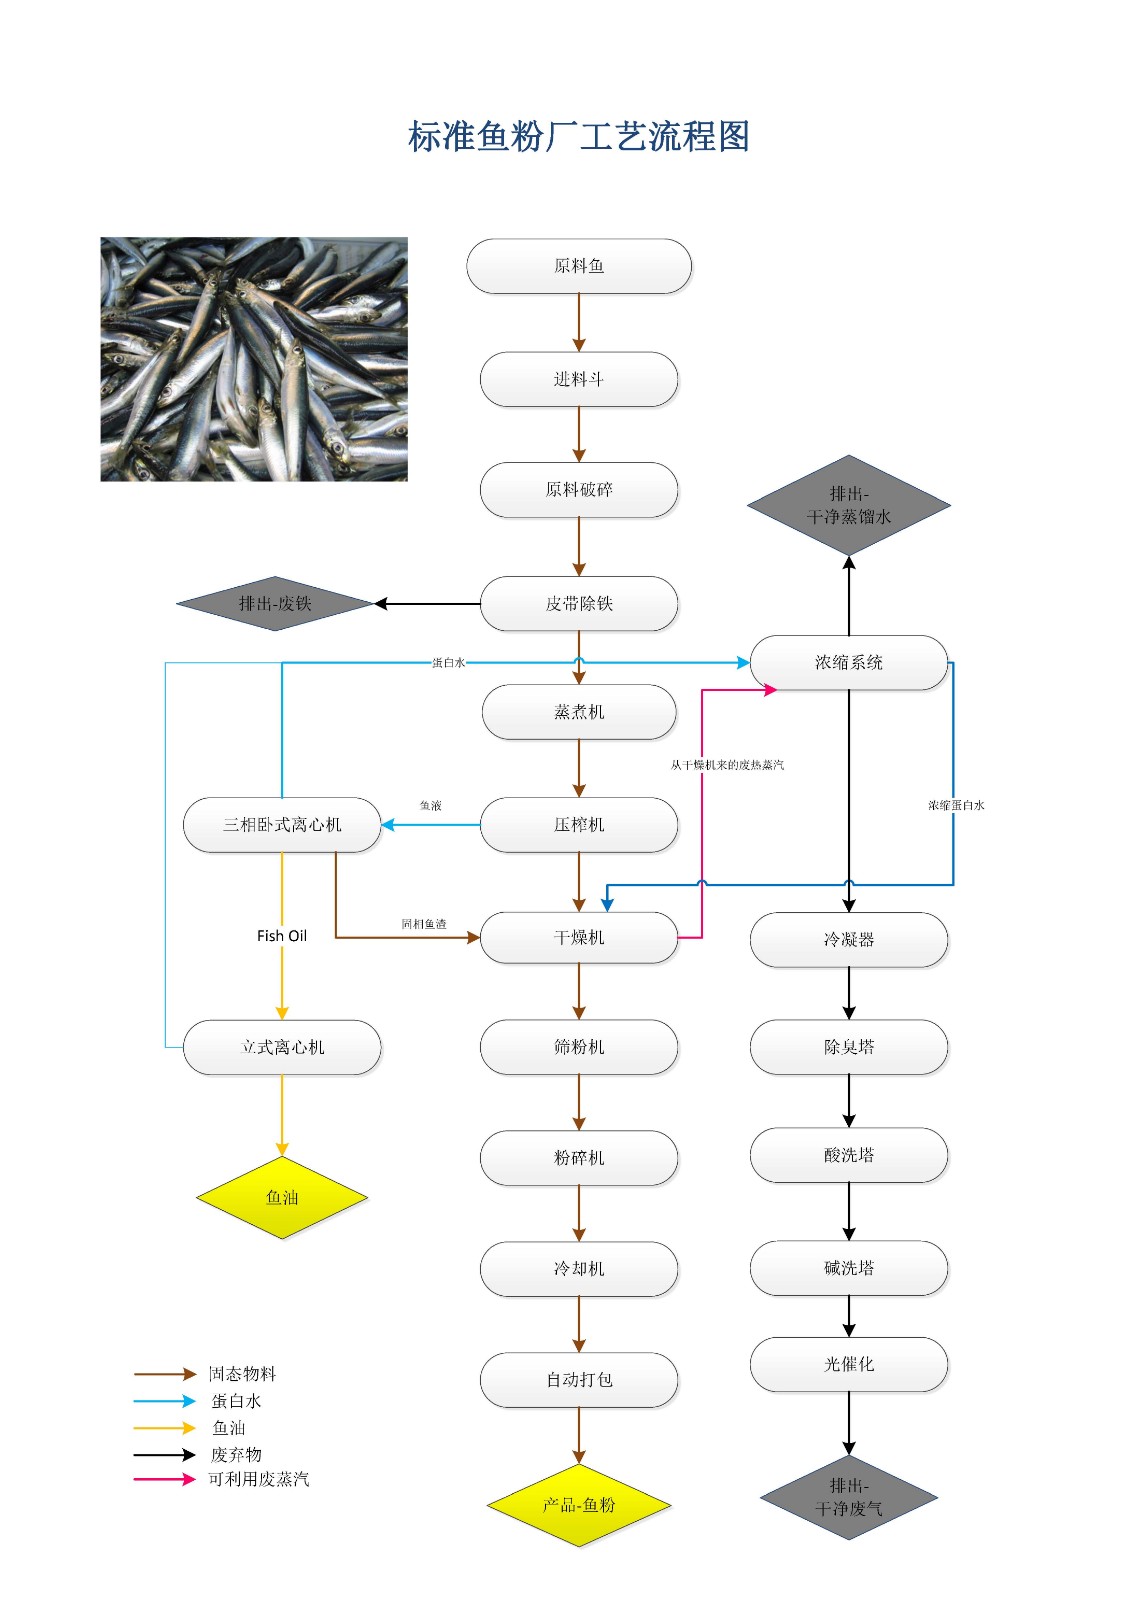 新舟湿法鱼粉生产工艺流程图